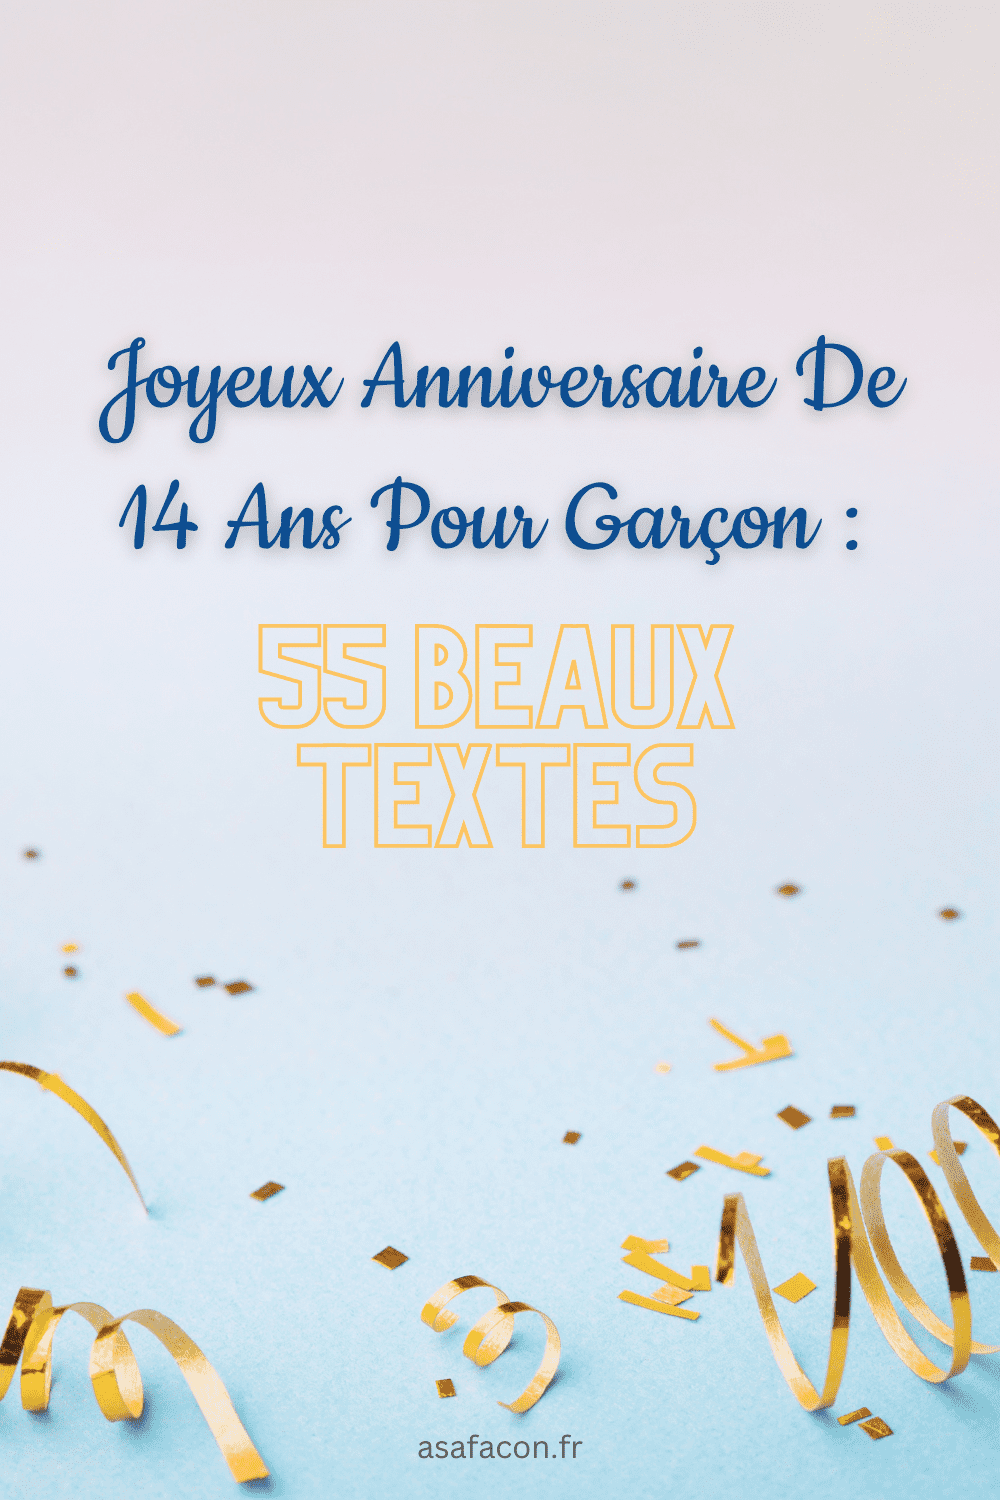 Joyeux Anniversaire De 14 Ans Pour Garçon : 55 Beaux Textes